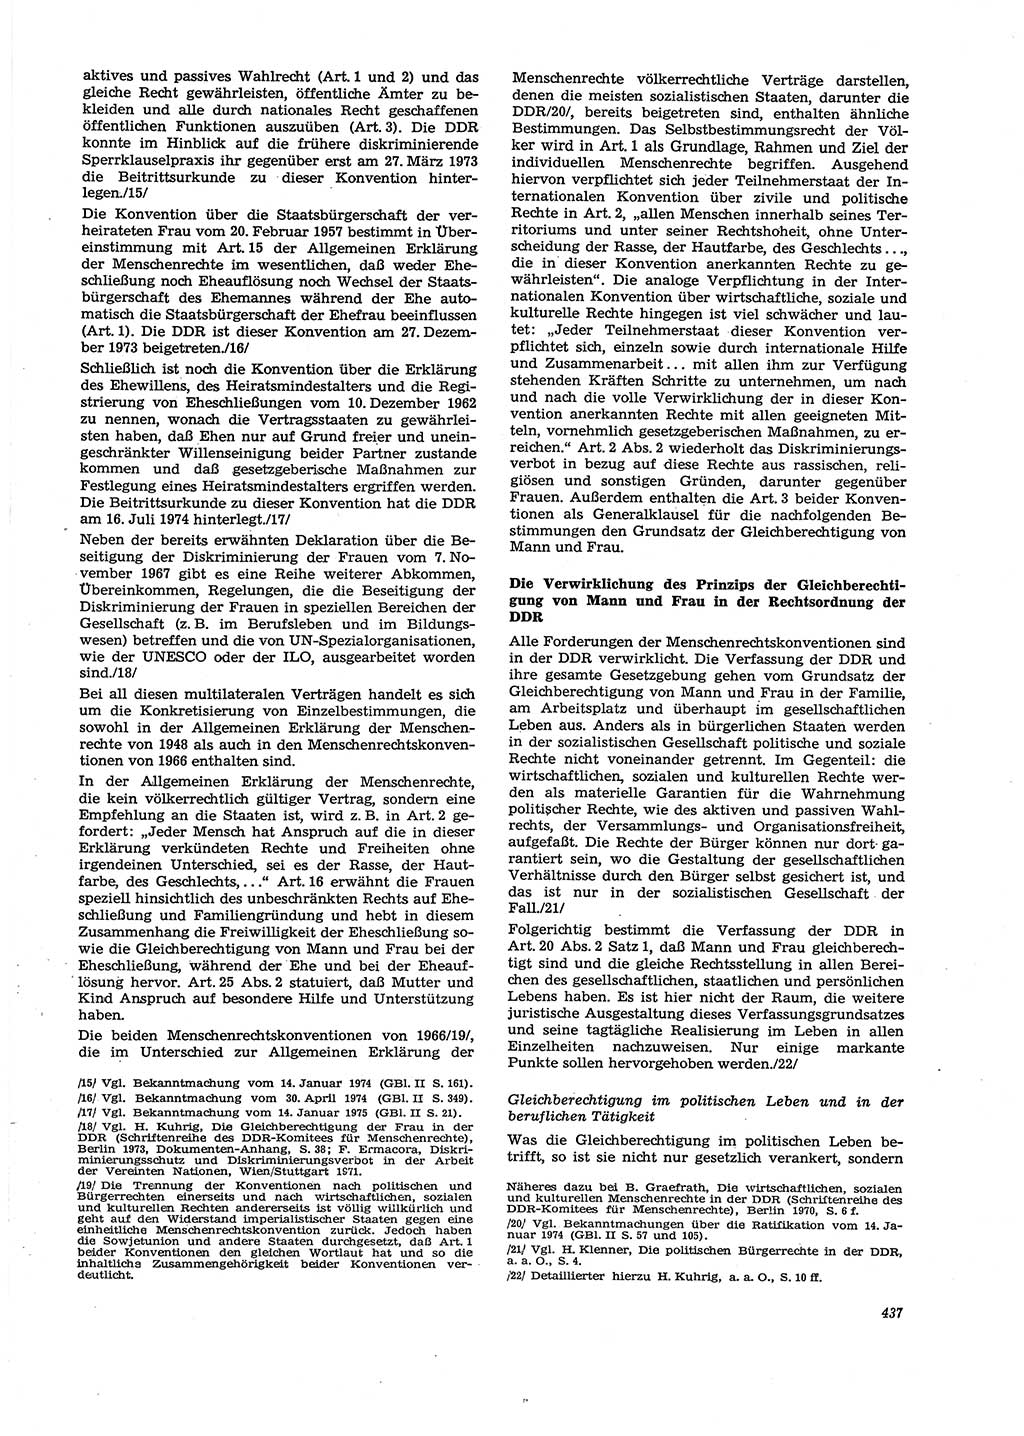 Neue Justiz (NJ), Zeitschrift für Recht und Rechtswissenschaft [Deutsche Demokratische Republik (DDR)], 29. Jahrgang 1975, Seite 437 (NJ DDR 1975, S. 437)